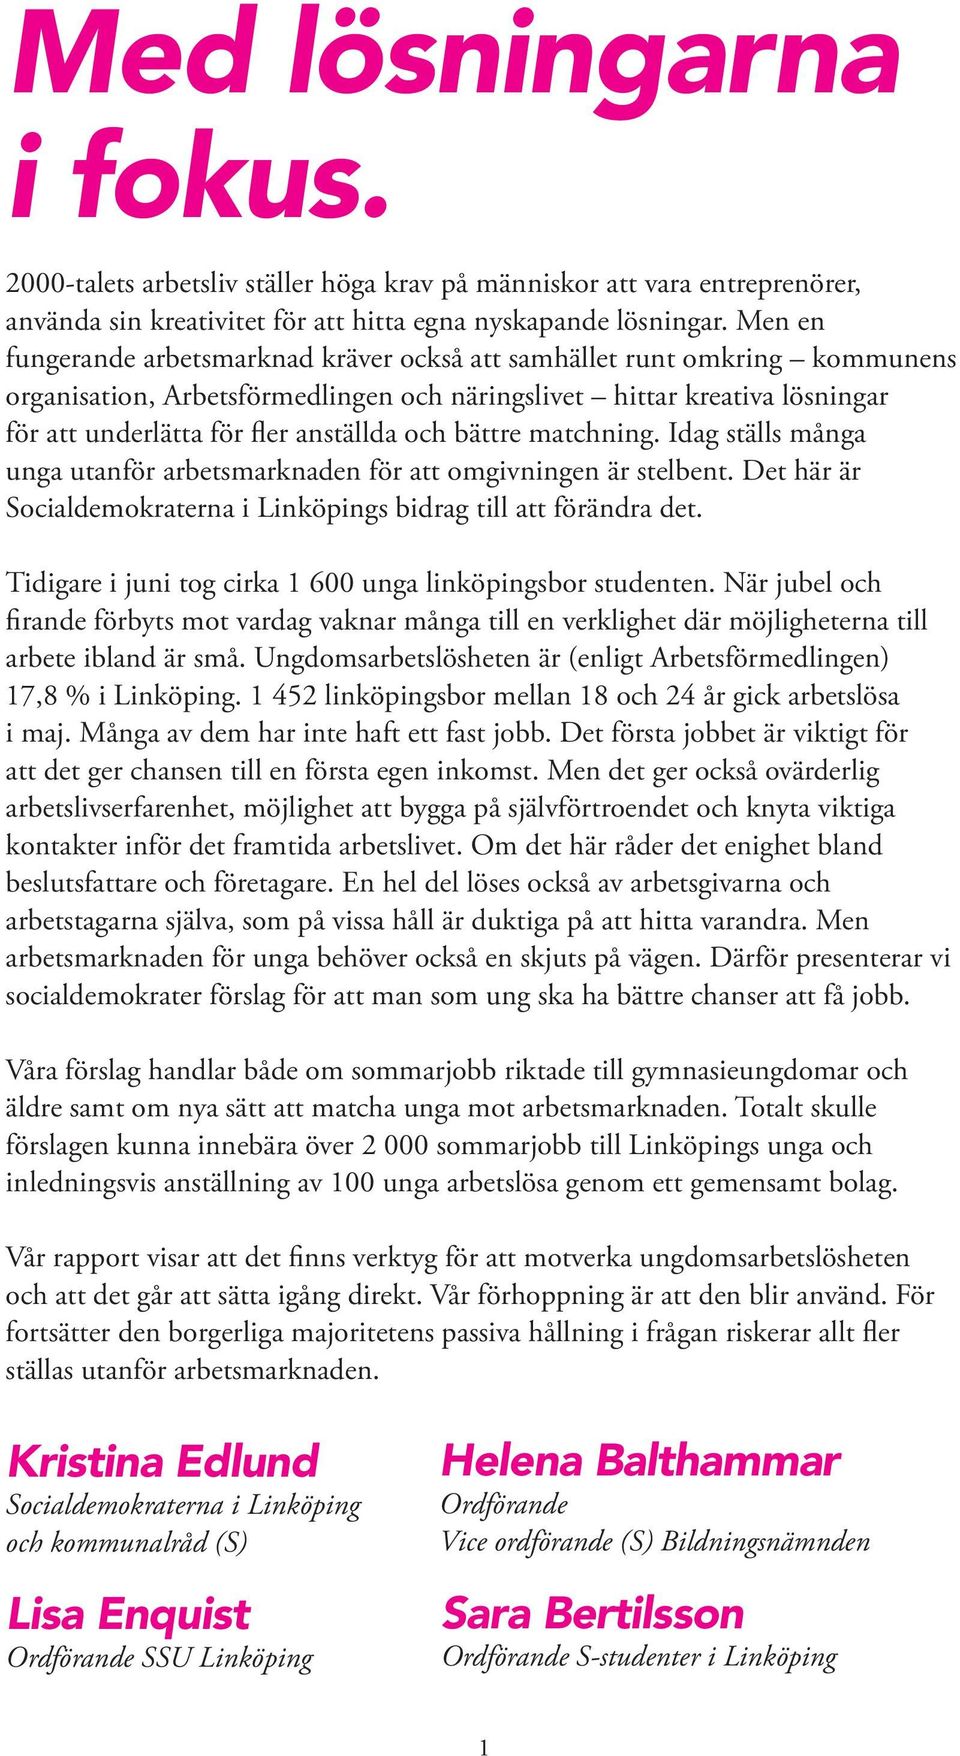 bättre matchning. Idag ställs många unga utanför arbetsmarknaden för att omgivningen är stelbent. Det här är Socialdemokraterna i Linköpings bidrag till att förändra det.